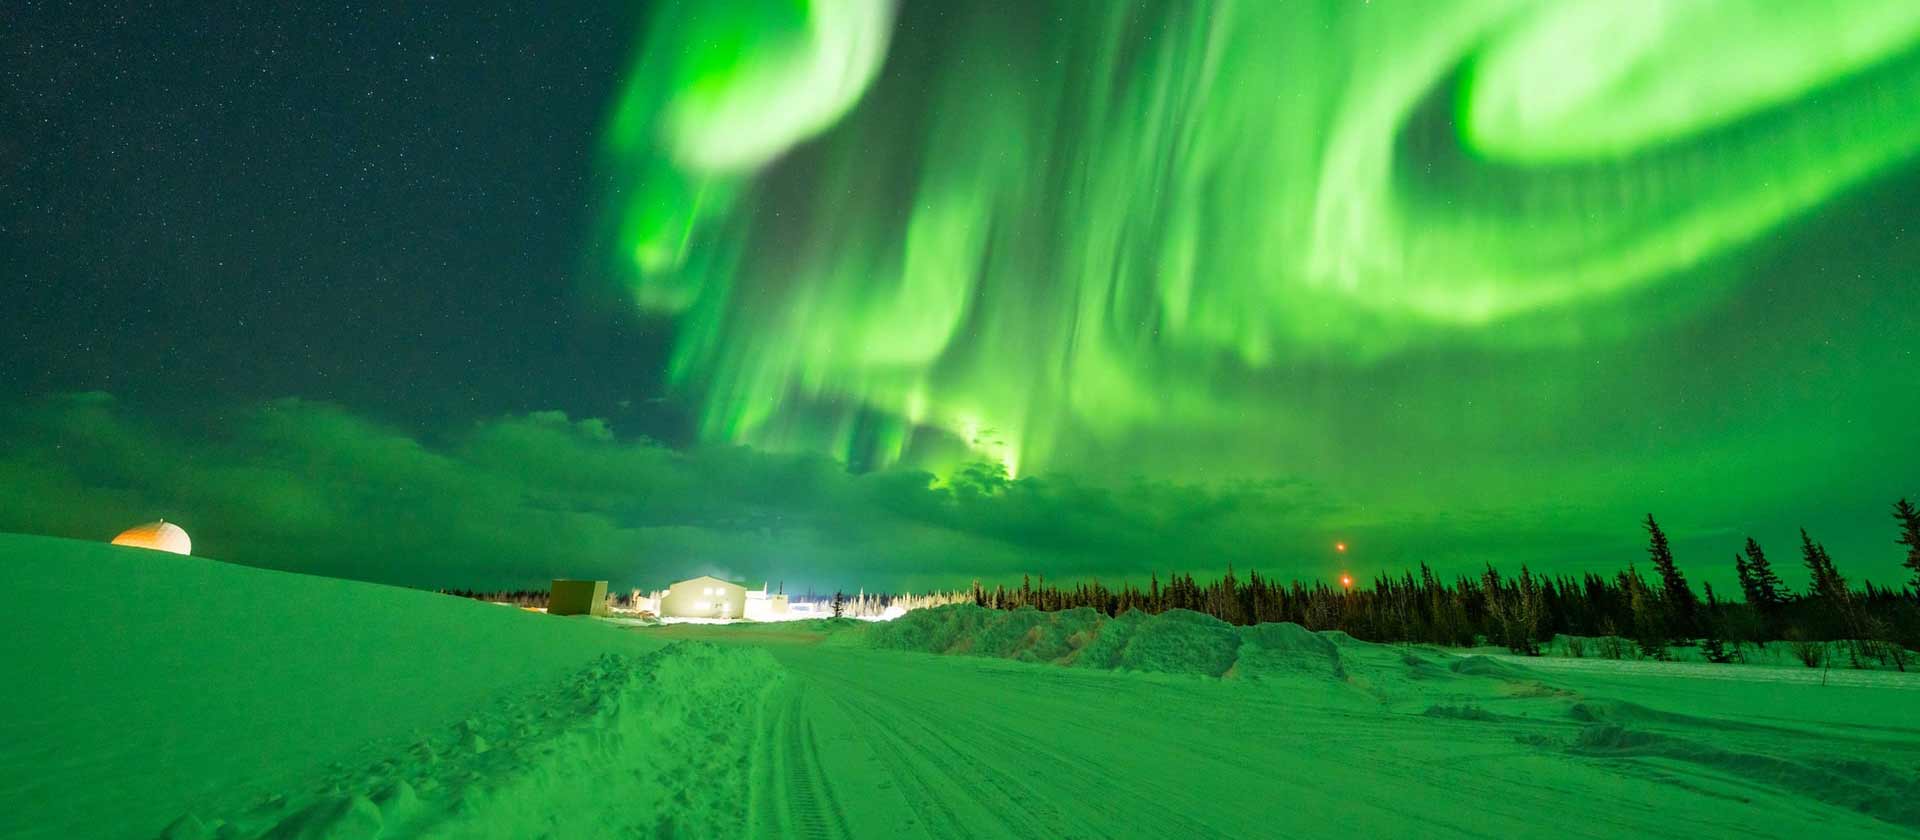 paysage d'une nuit enneigé du Yukon. Le ciel clair fait découvrir de magnifiques et incroyables aurores boréales